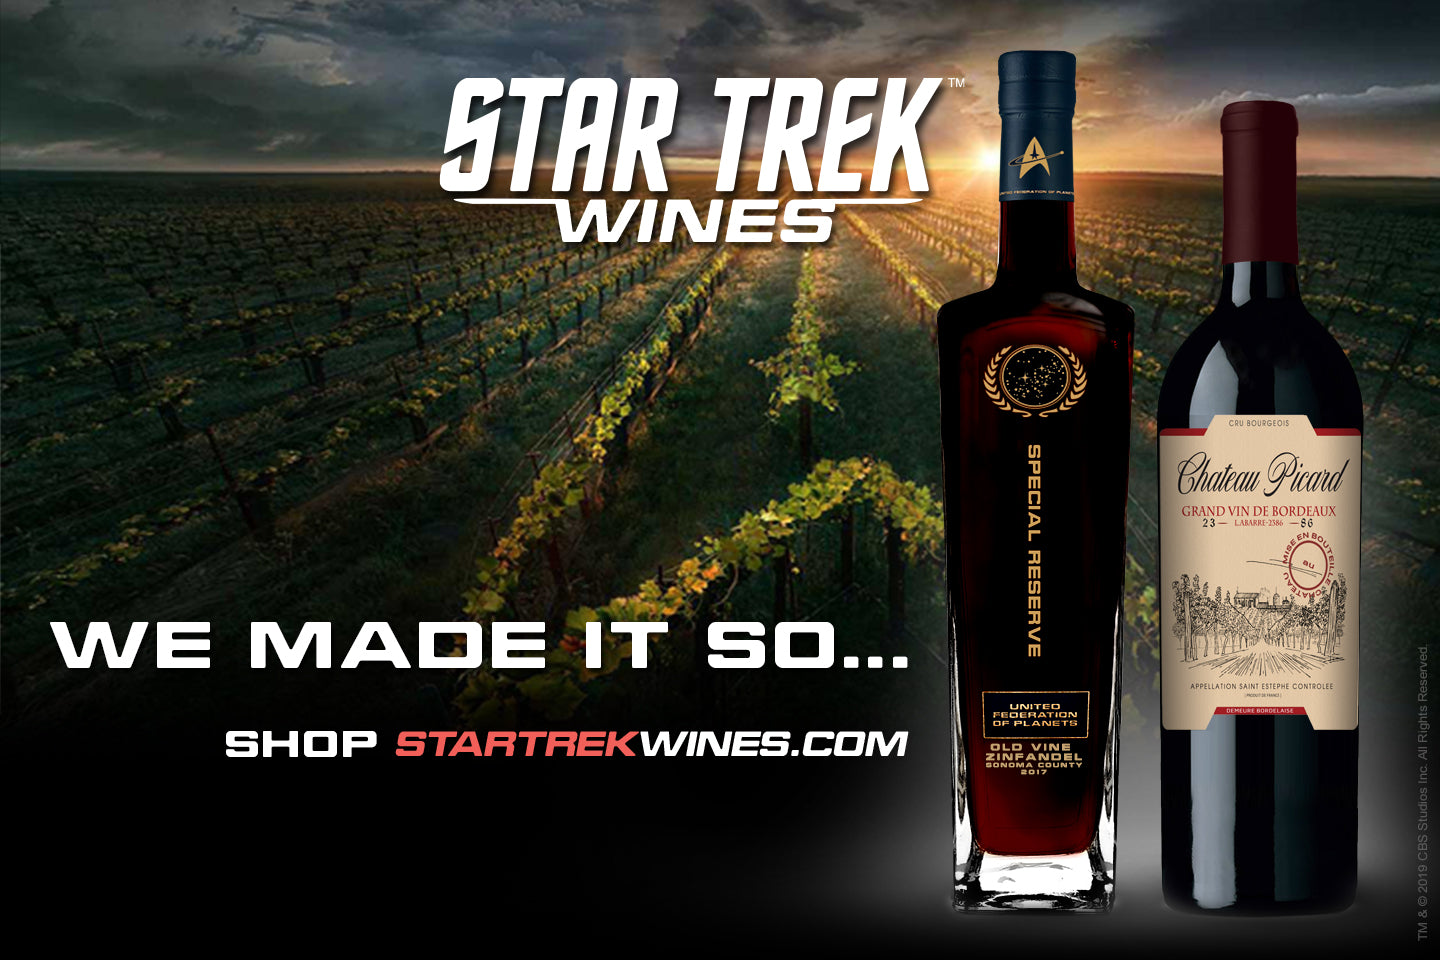 About Star Trek Wines